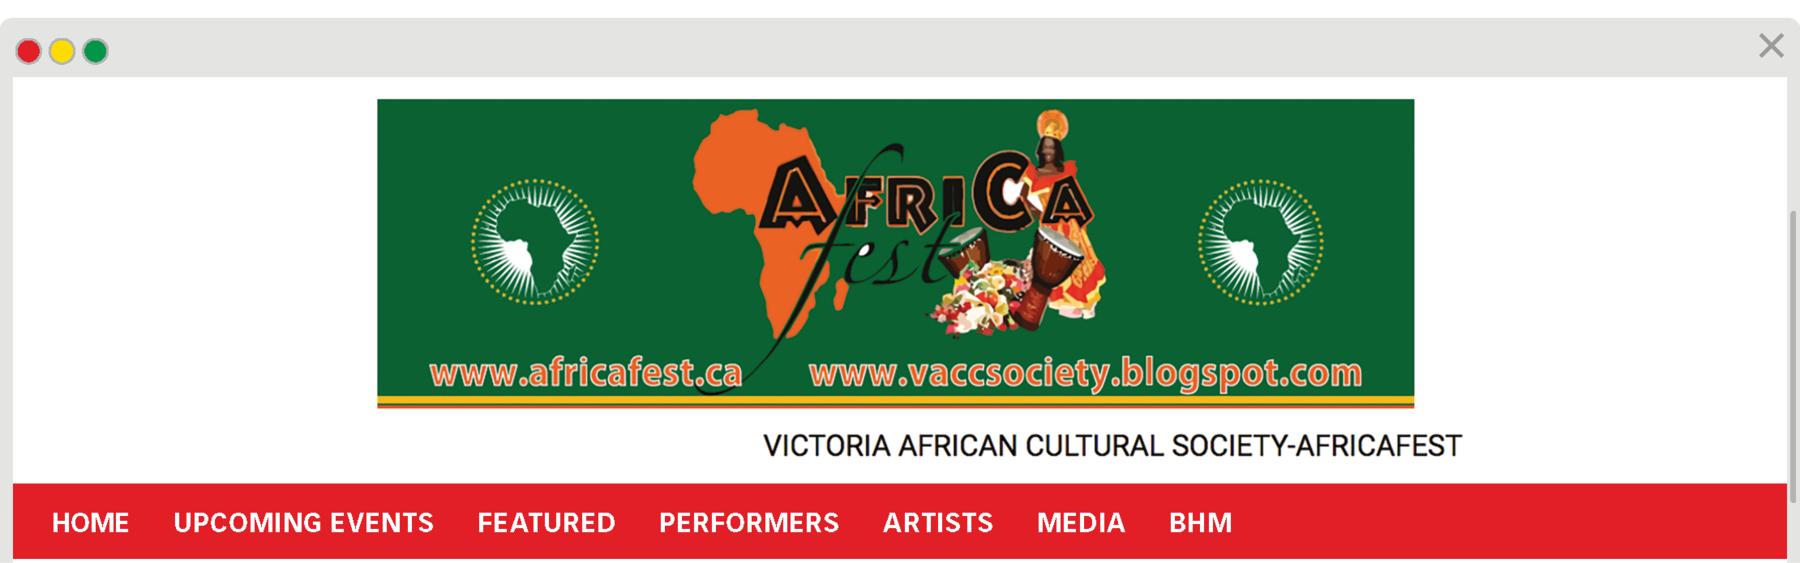 Reprodução de página da internet. Na parte superior, banner com a inscrição AFRICA Fest com ilustração do contorno do mapa africano e fotografia de uma mulher com adorno na cabeça e vestido comprido e laranja. Ao lado há tambores. Abaixo, os sites: www.africafest.ca; www.vaccsociety.blogspot.com. VICTORIA AFRICAN CULTURAL SOCIETY-AFRICAFEST. Em seguida, os botões: HOME; UPCOMING EVENTS; FEATURED; PERFORMERS; ARTISTS; MEDIA; BHM.